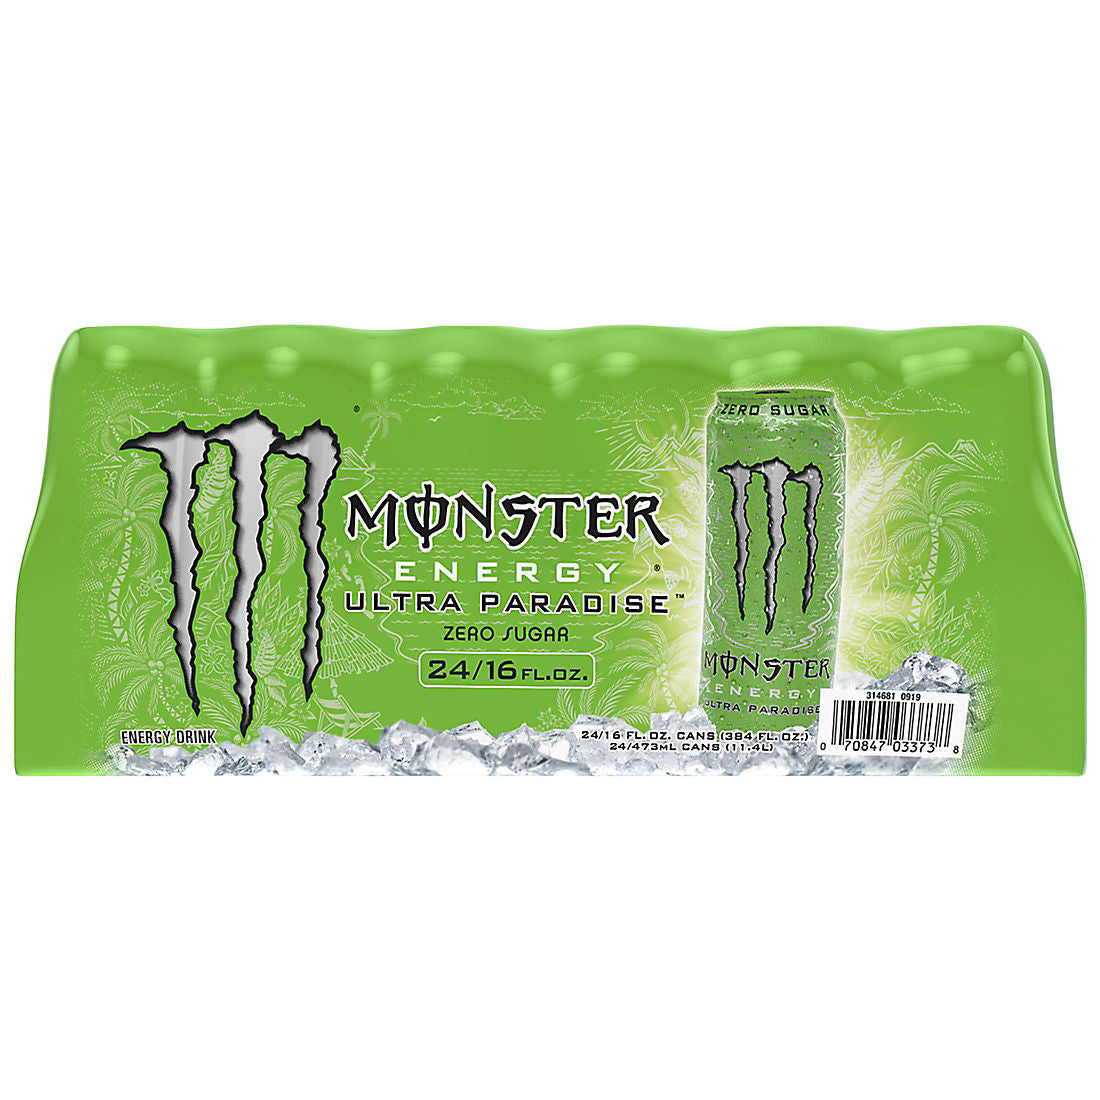 Monster Energy Ultra Paradise, 24 pk./16 oz.